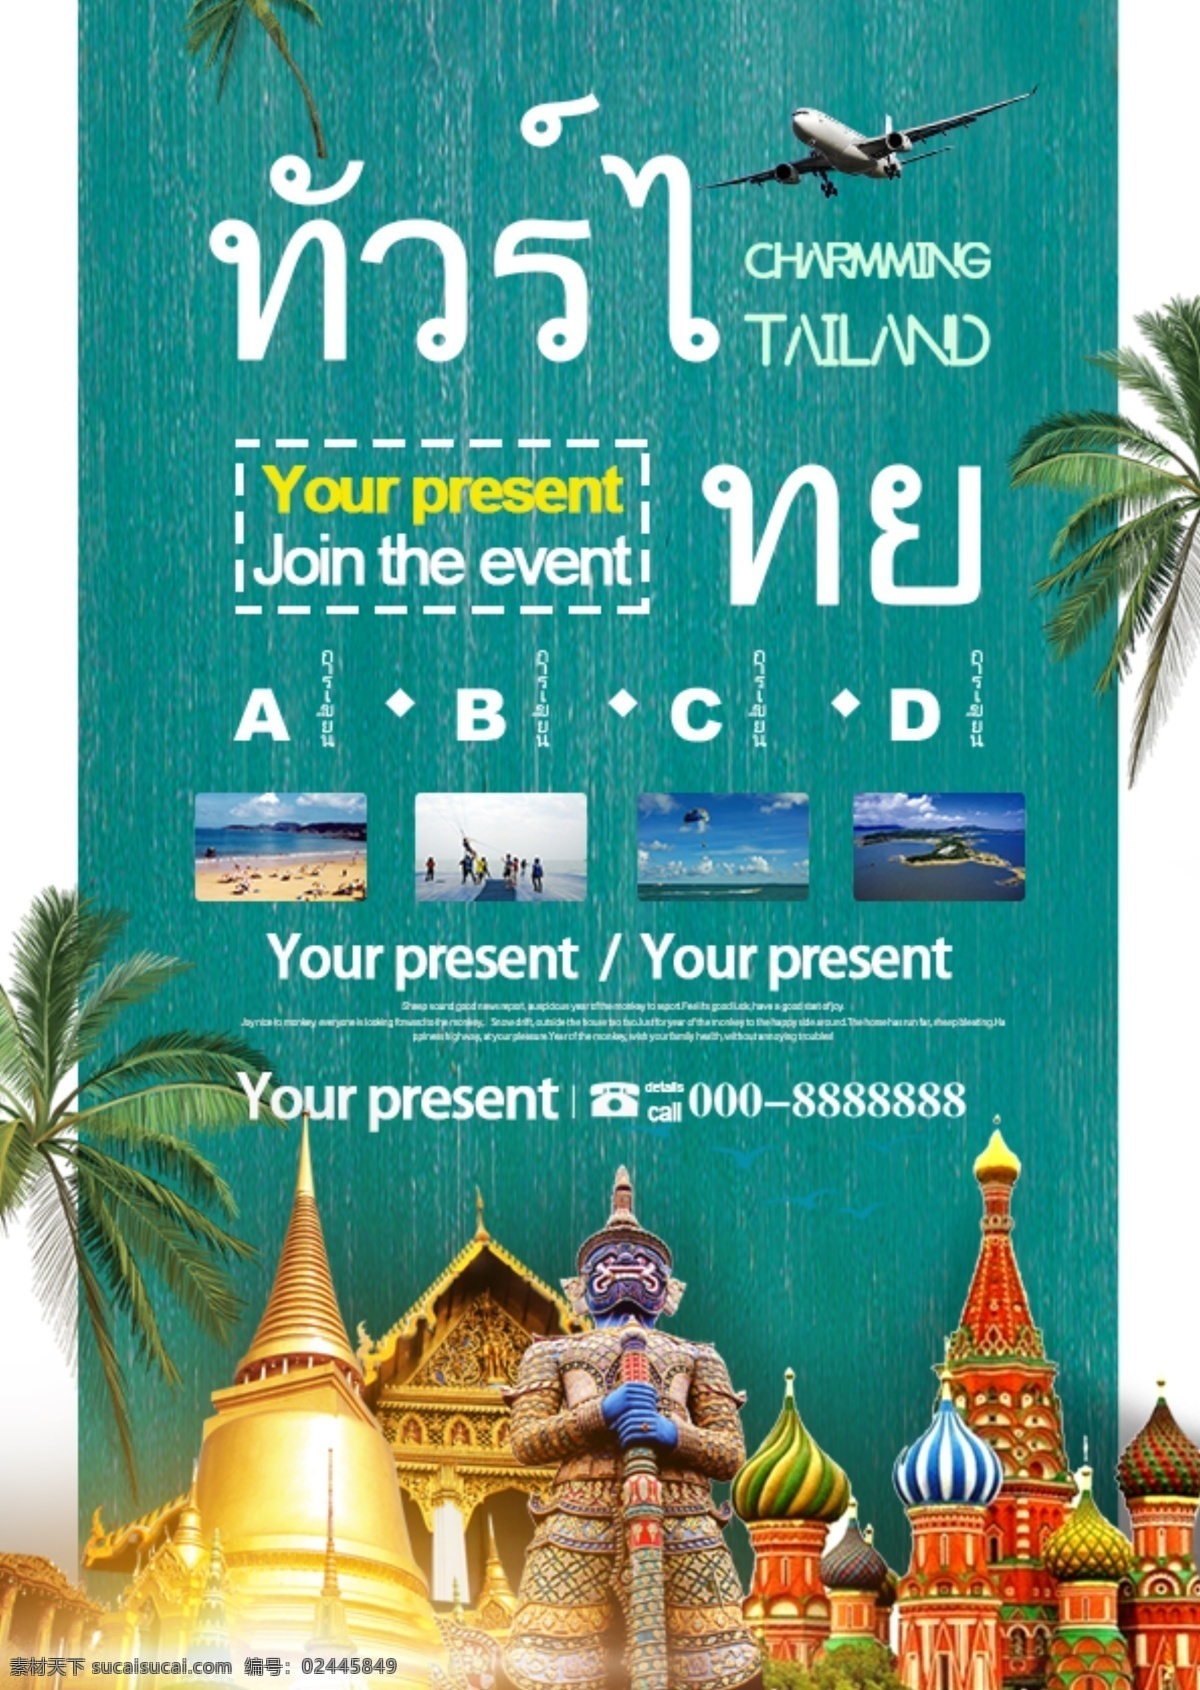 泰国 旅游景点 宣传 游览 假期中 风景区 拥护 海报 房屋 佛像 寺庙 椰子树 大皇宫